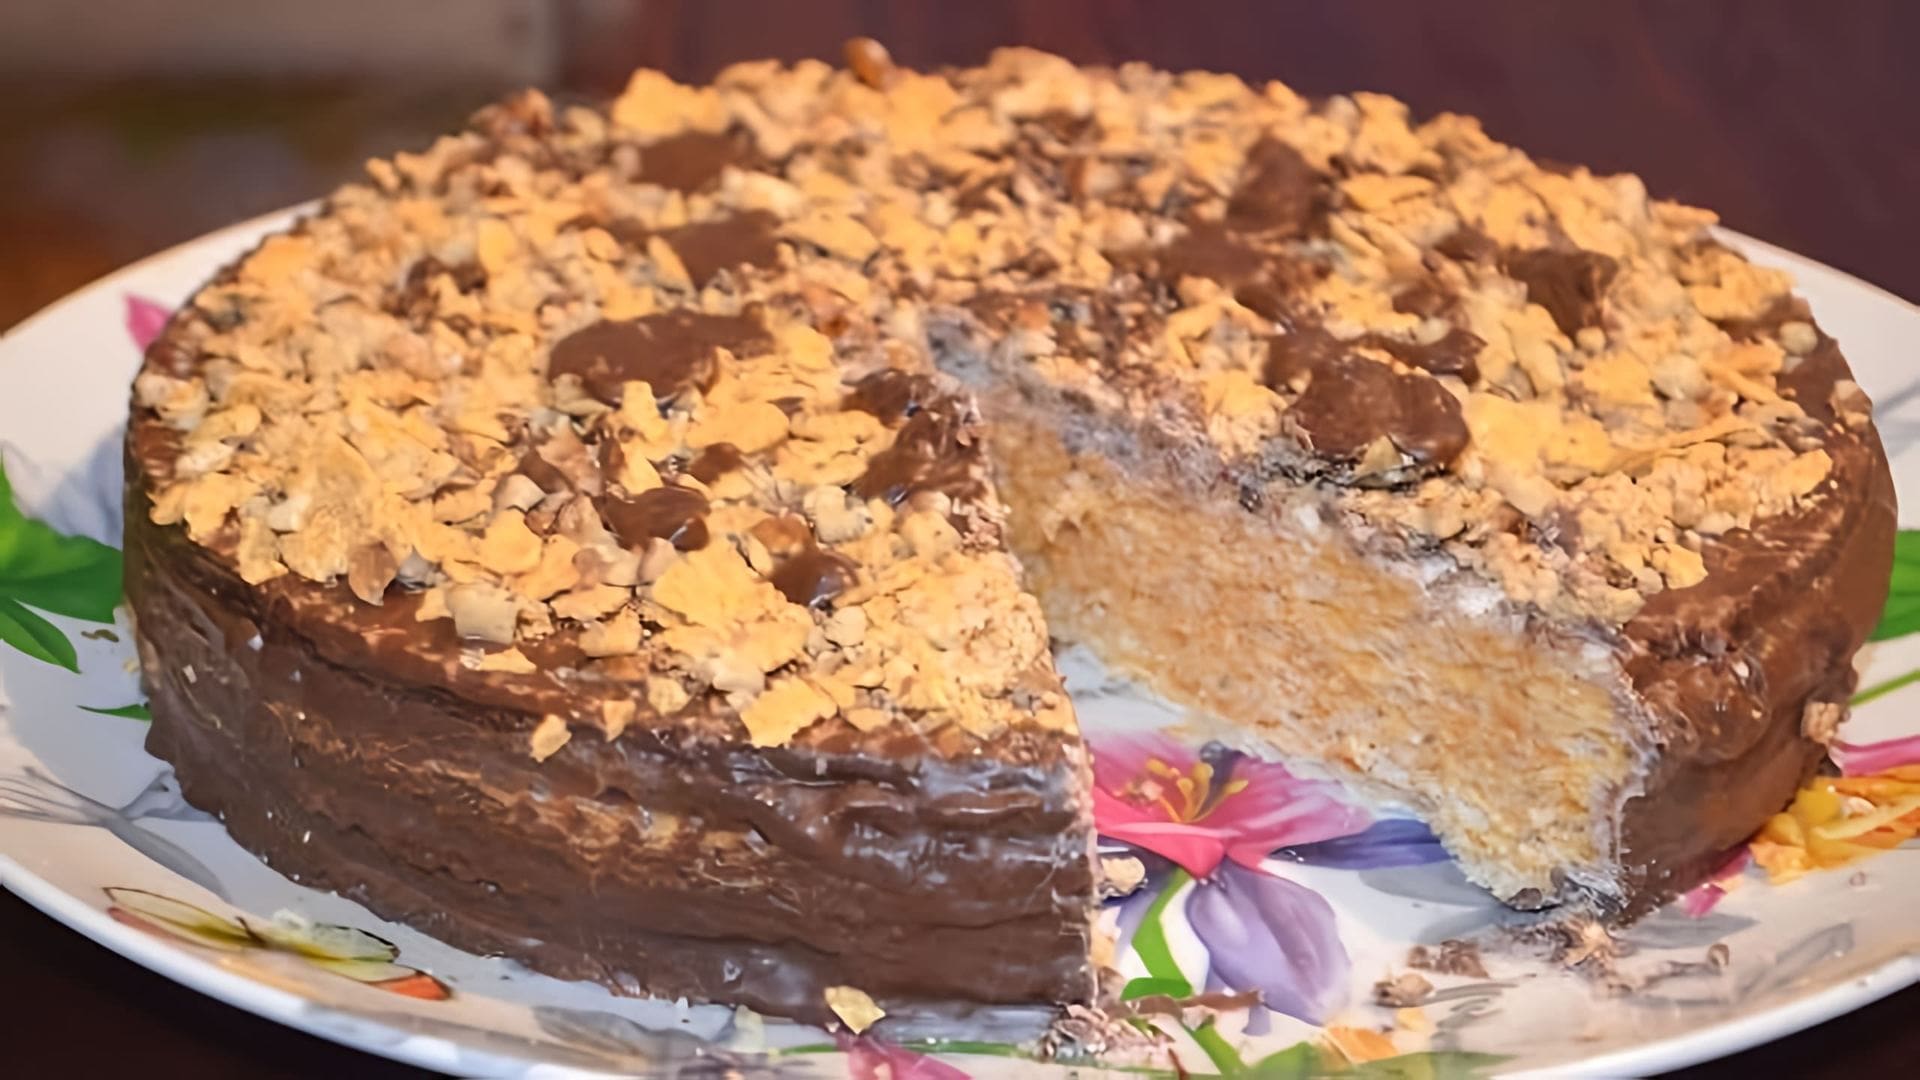 В этом видео демонстрируется процесс приготовления вафельного торта из готовых коржей